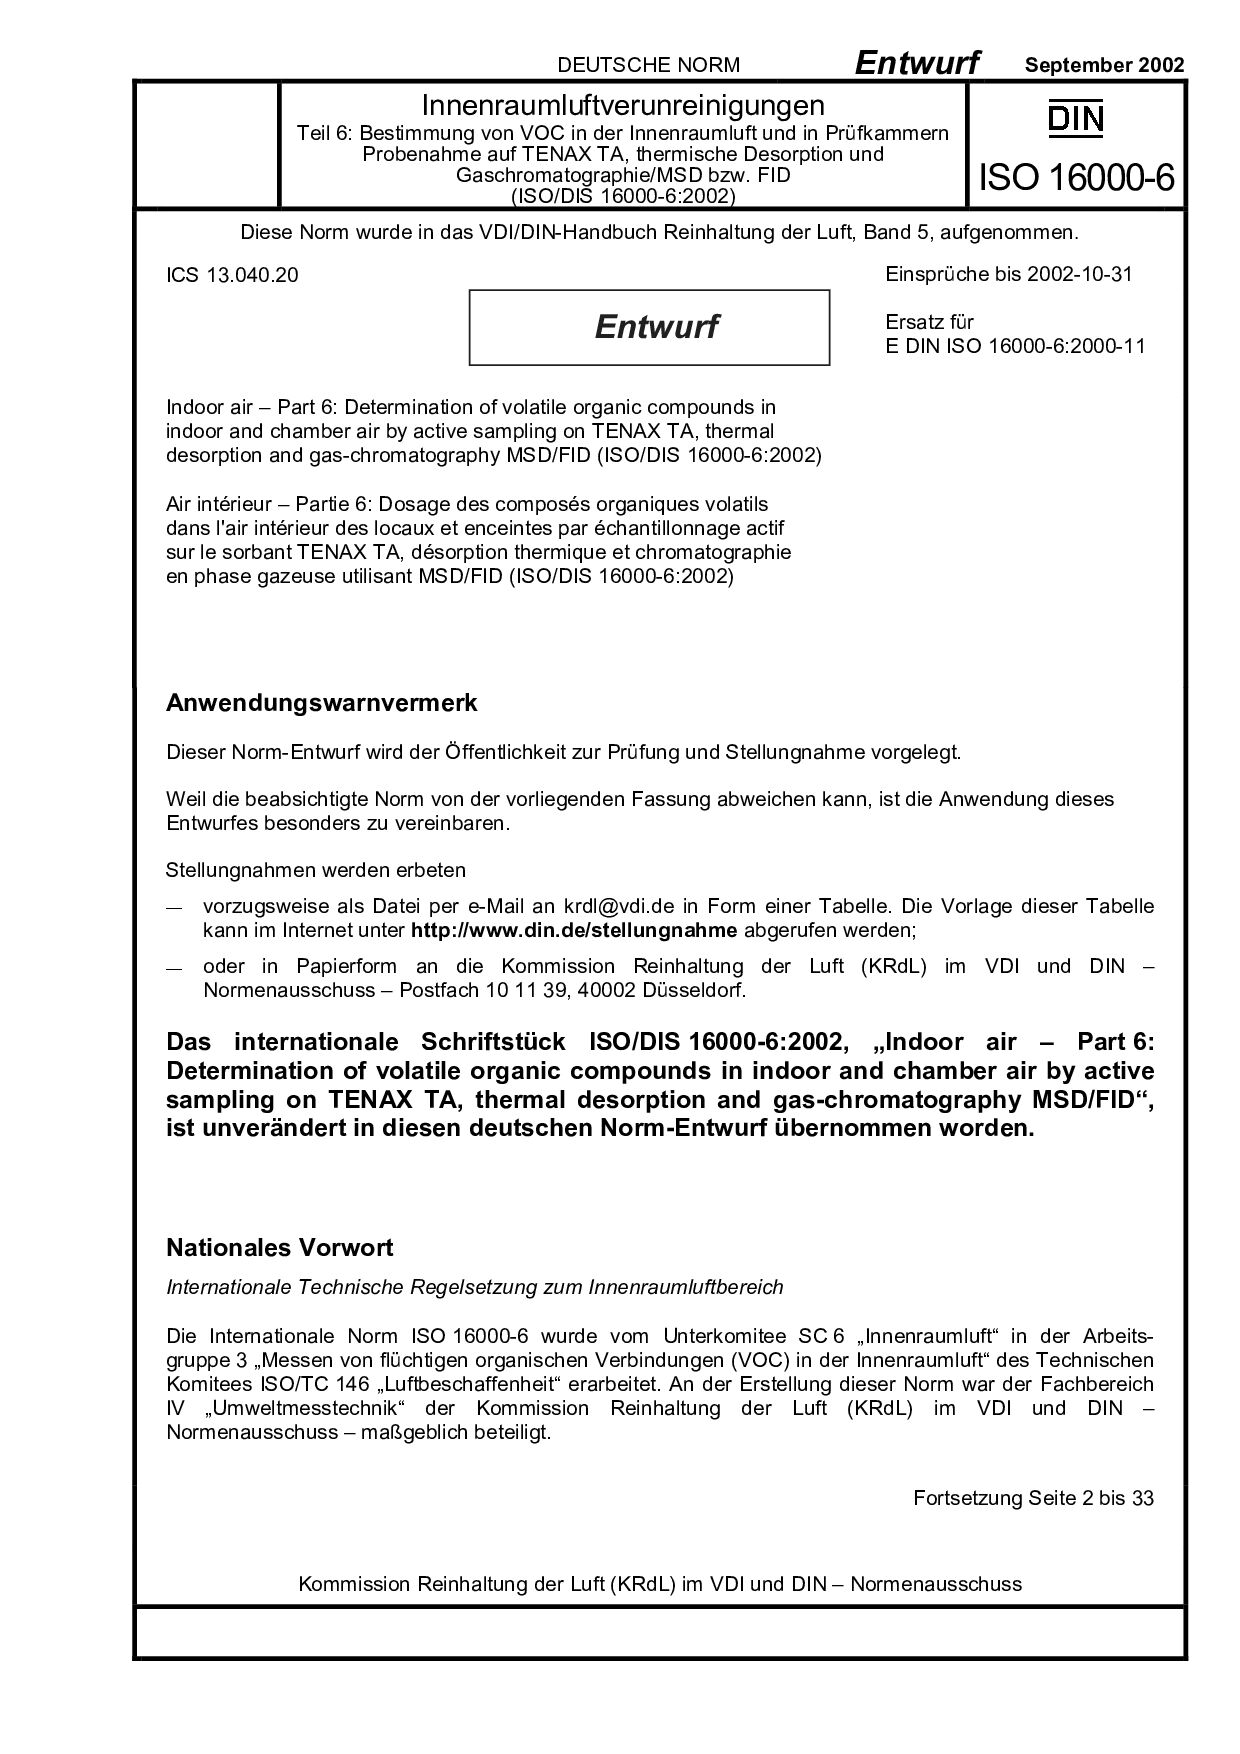 DIN ISO 16000-6 E:2002-09封面图